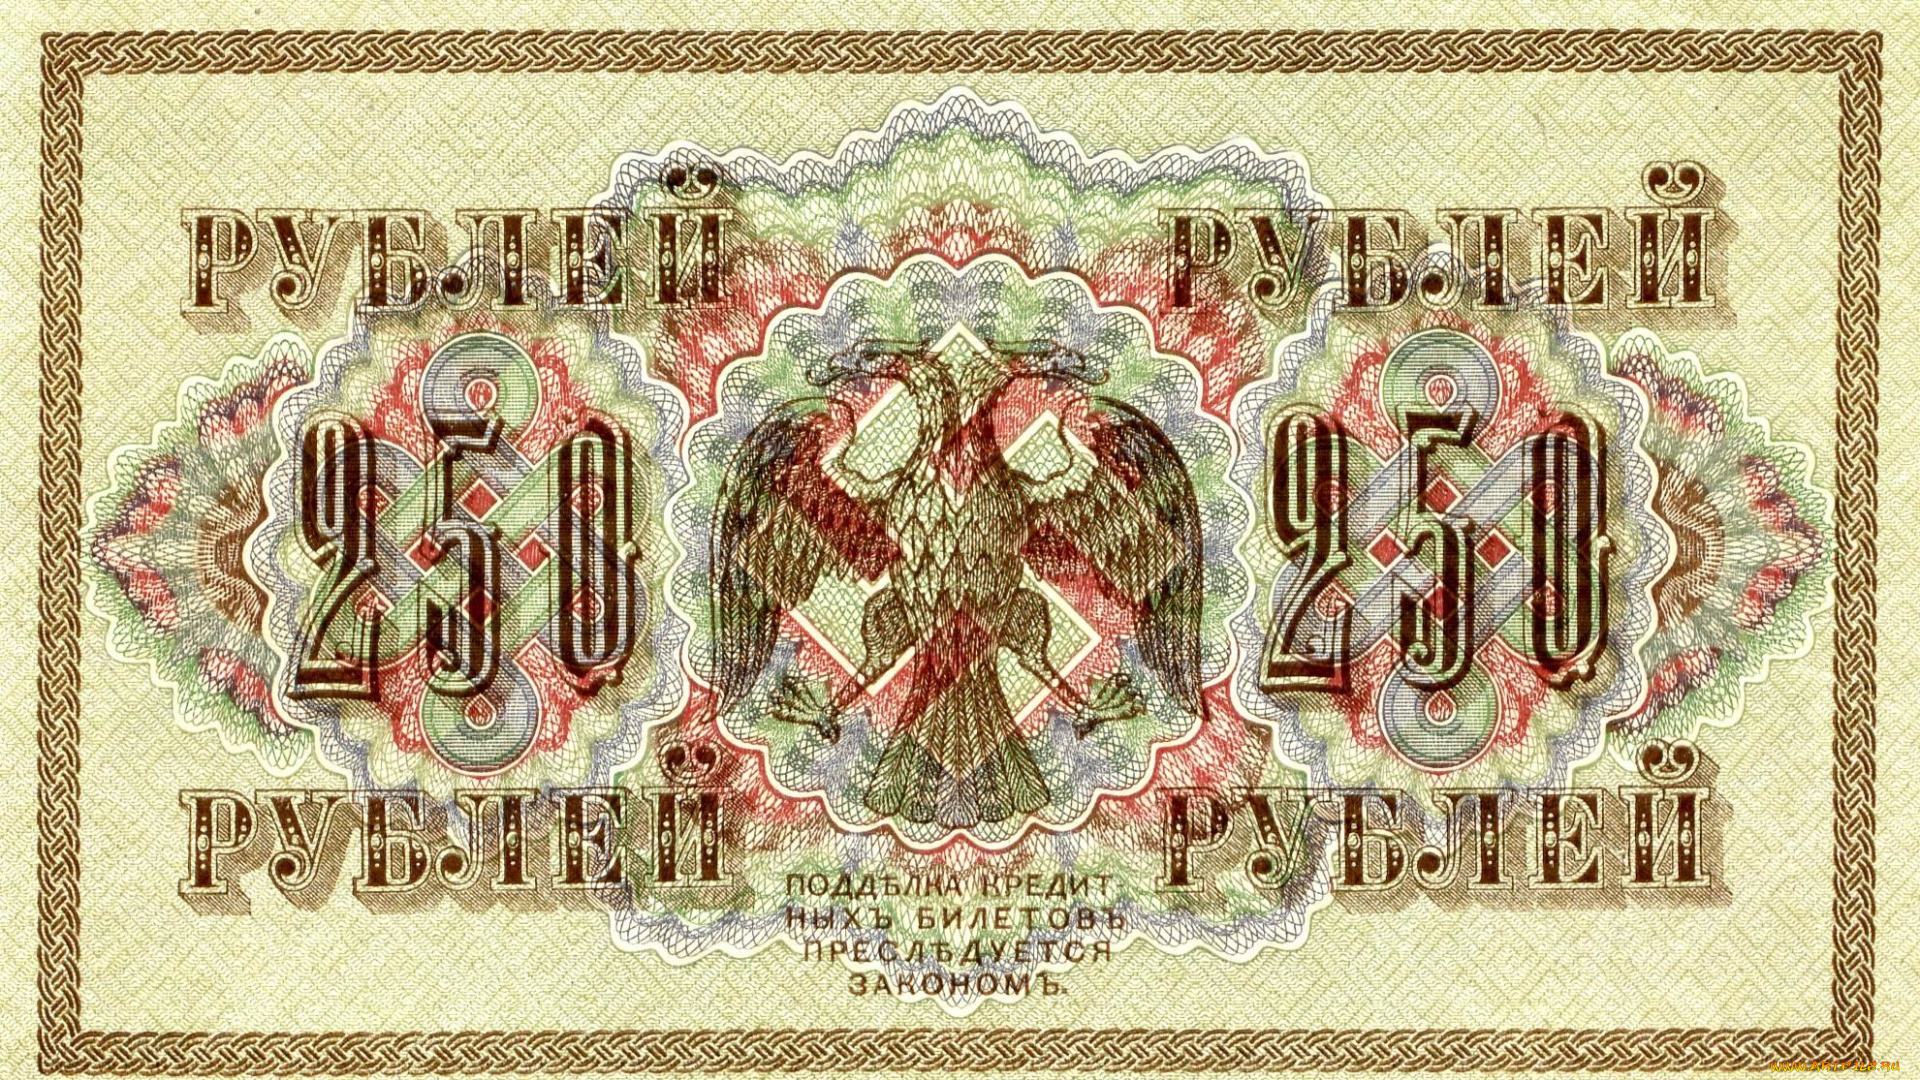 250, рублей, , 1918, разное, золото, , купюры, , монеты, бумажные, деньги, банкнота, 250, рублей, рсфср